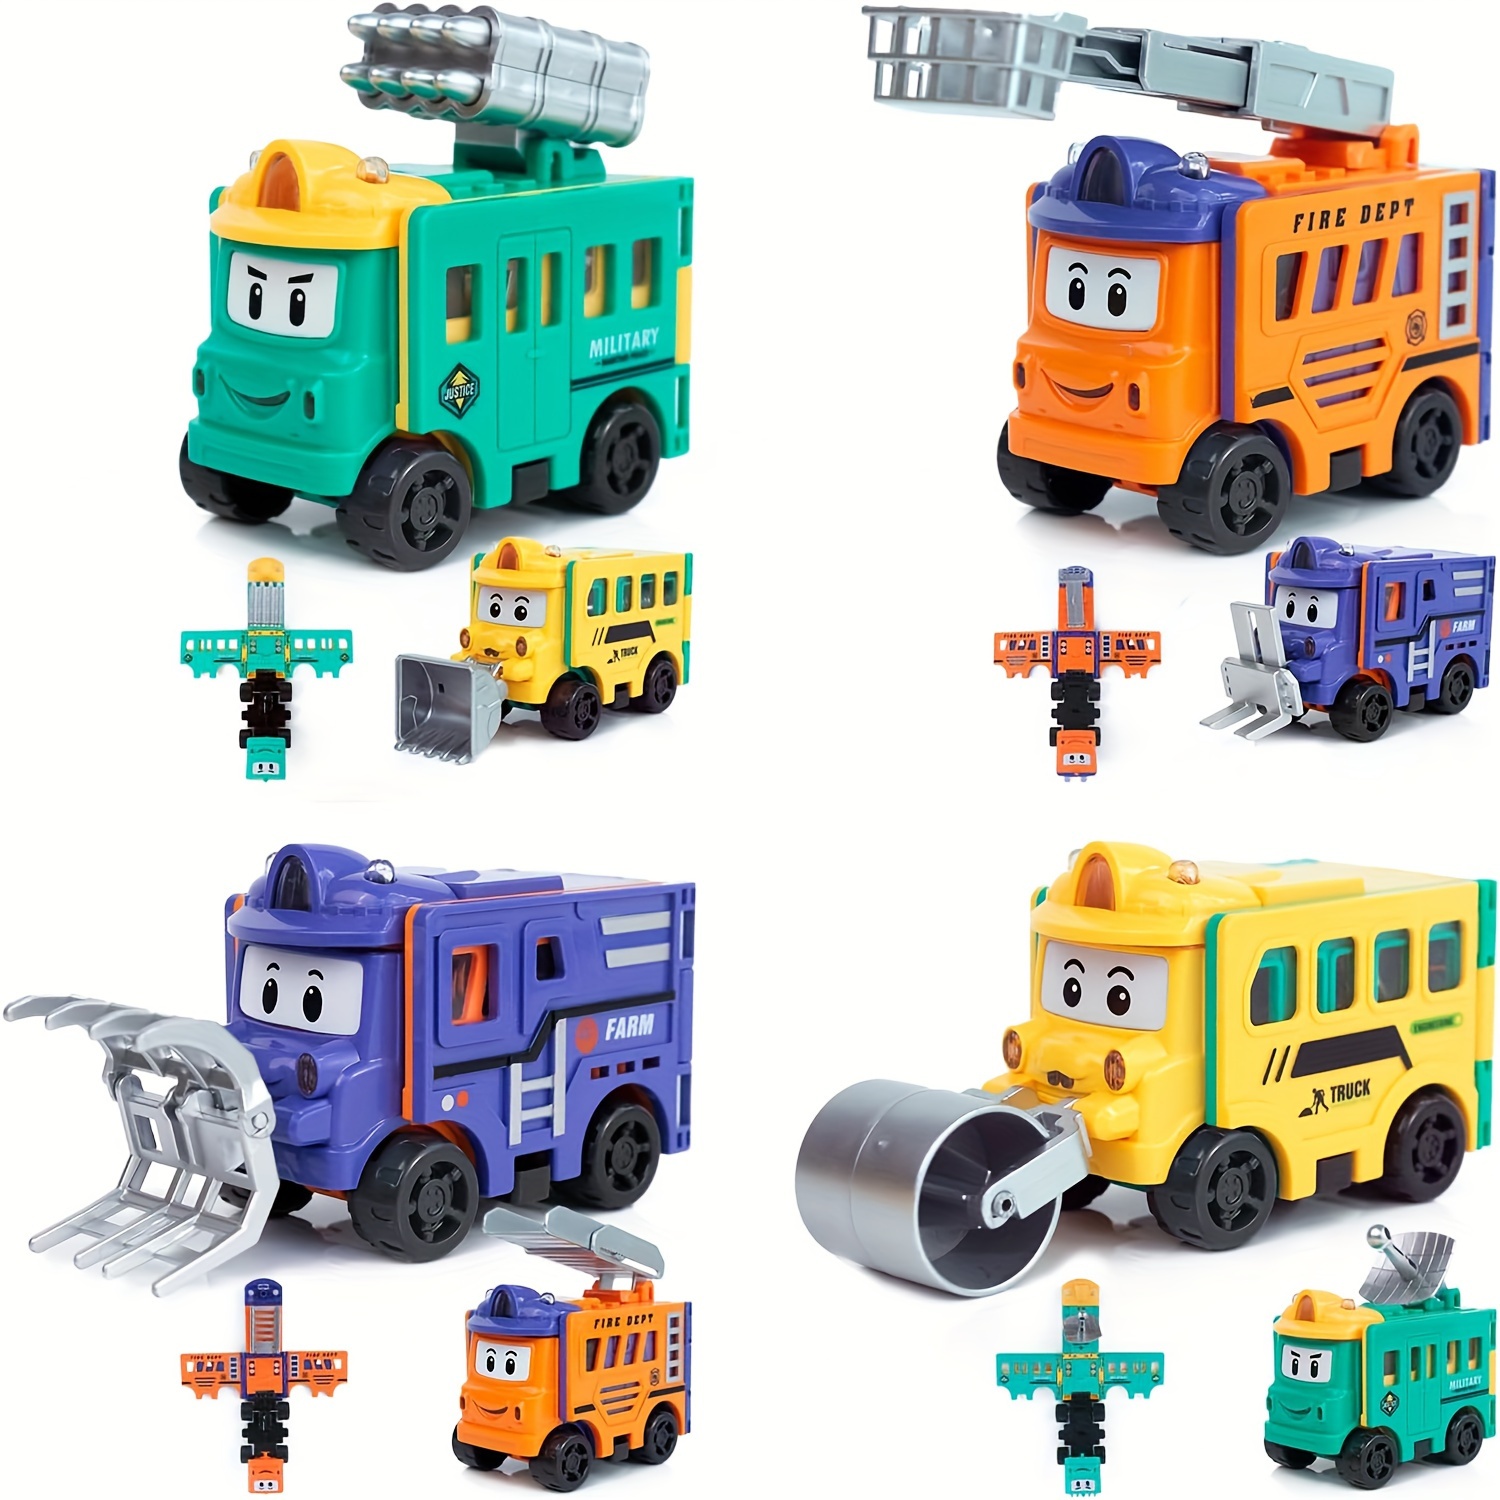  TEMI Camión de construcción de juguete para niños pequeños de  3, 4, 5, 6 años, 7 en 1, vehículos de construcción con tapete de juego,  juego de juguetes de automóvil para